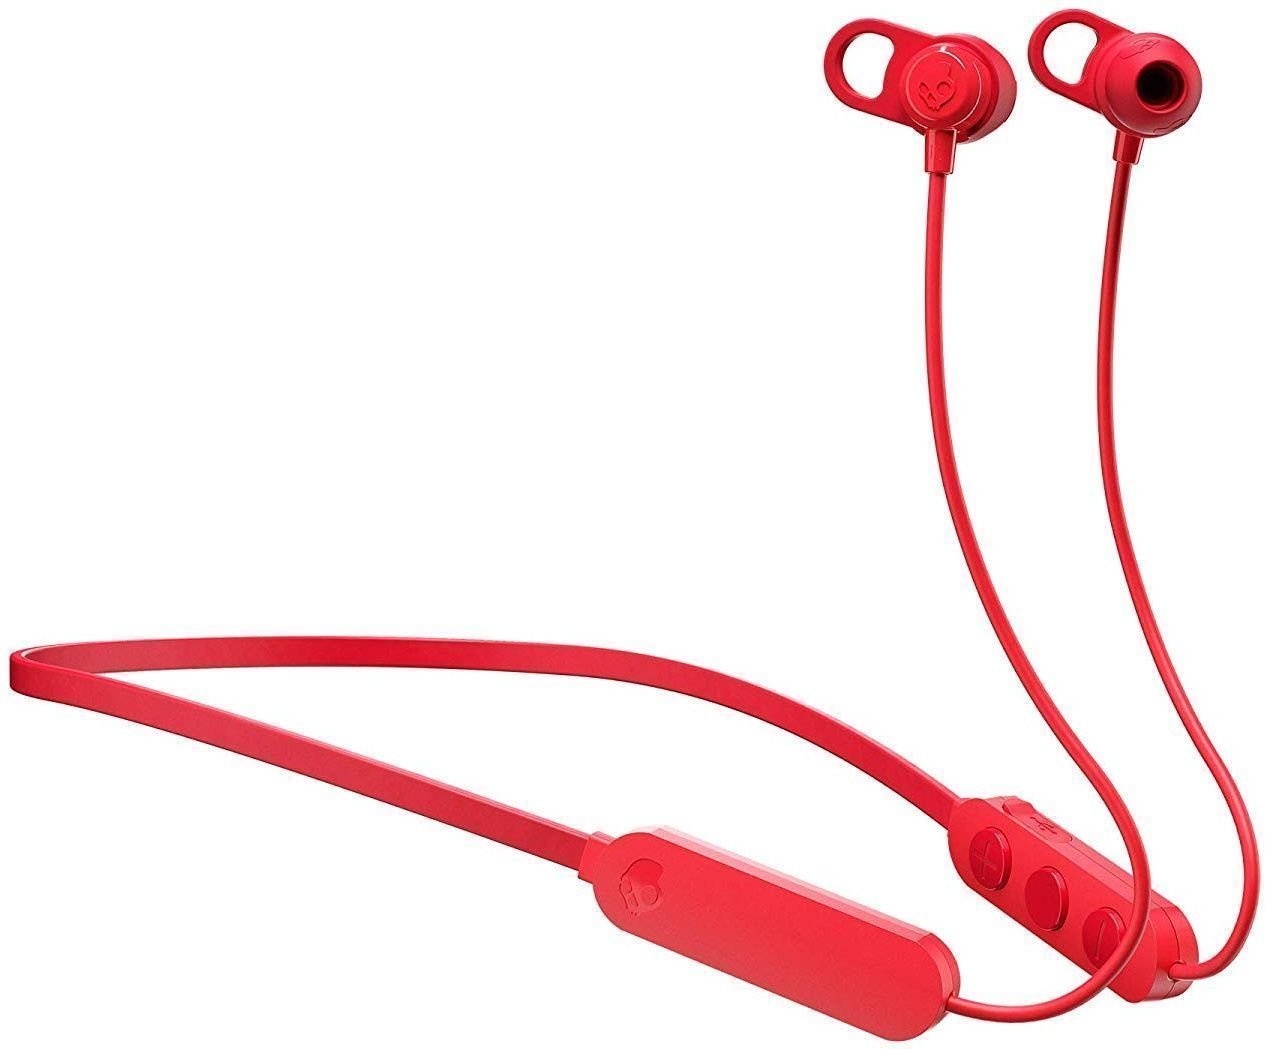 Drahtlose In-Ear-Kopfhörer Skullcandy JIB Plus Wireless Earbuds Rot